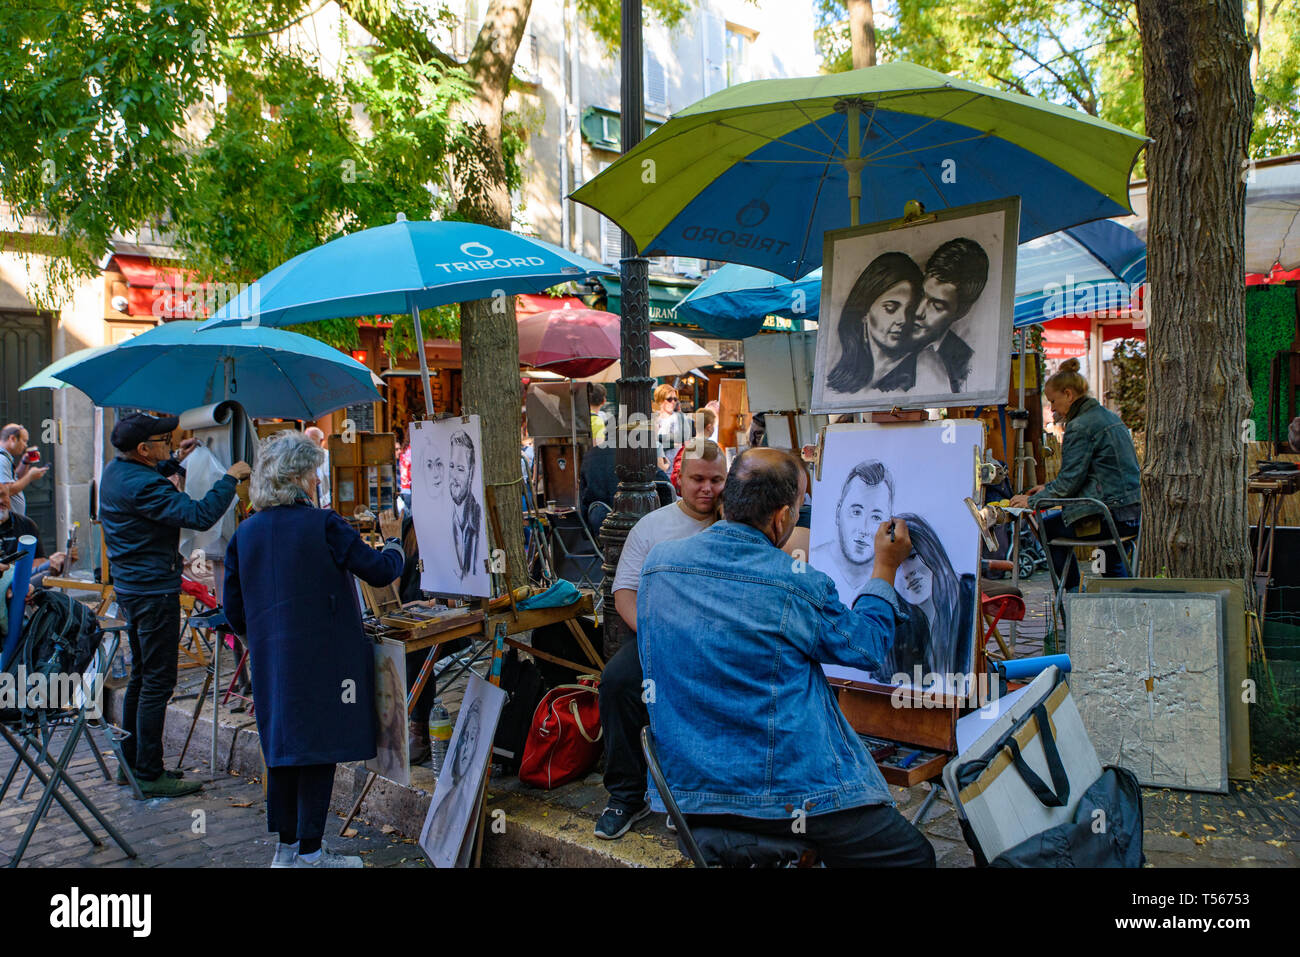 La piazza di Place du Tertre a Montmartre, famosa per gli artisti, pittori e portraitists Foto Stock